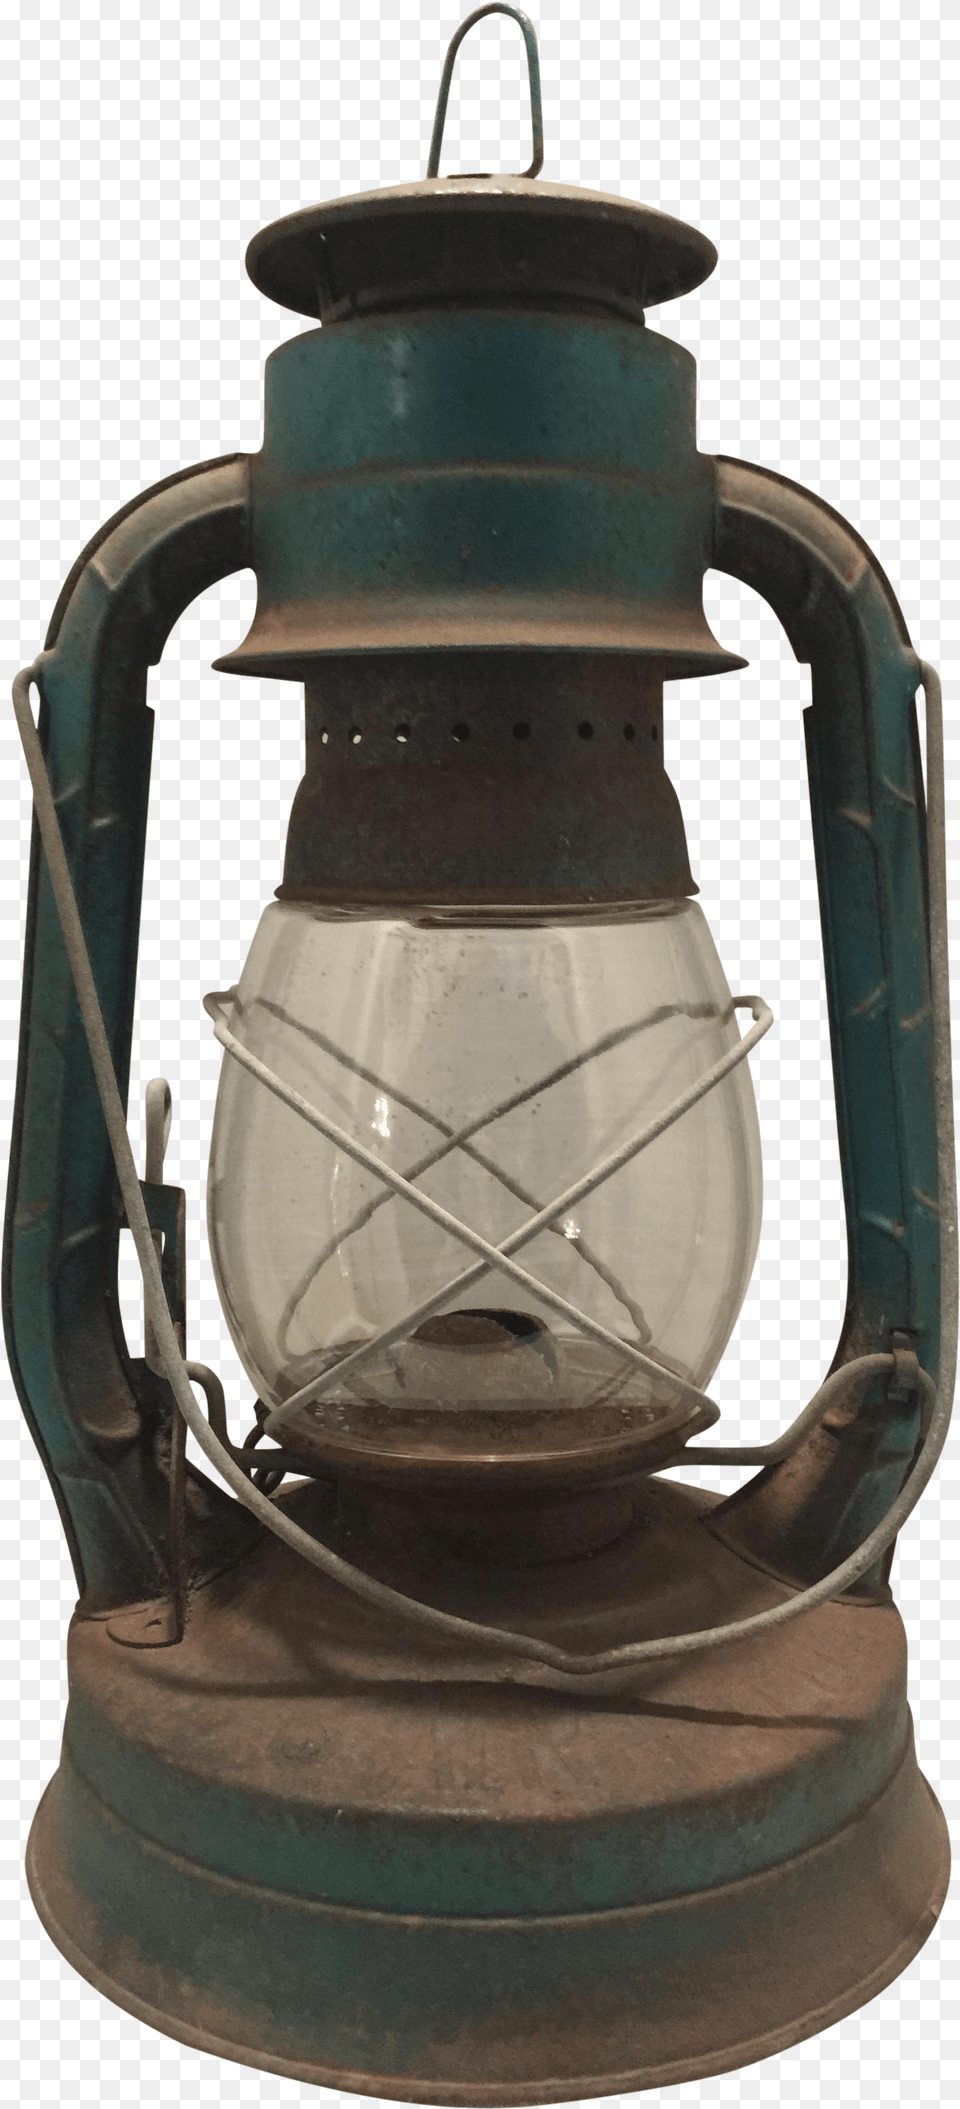 Lantern, Lamp, Lampshade, Bottle, Shaker Free Png